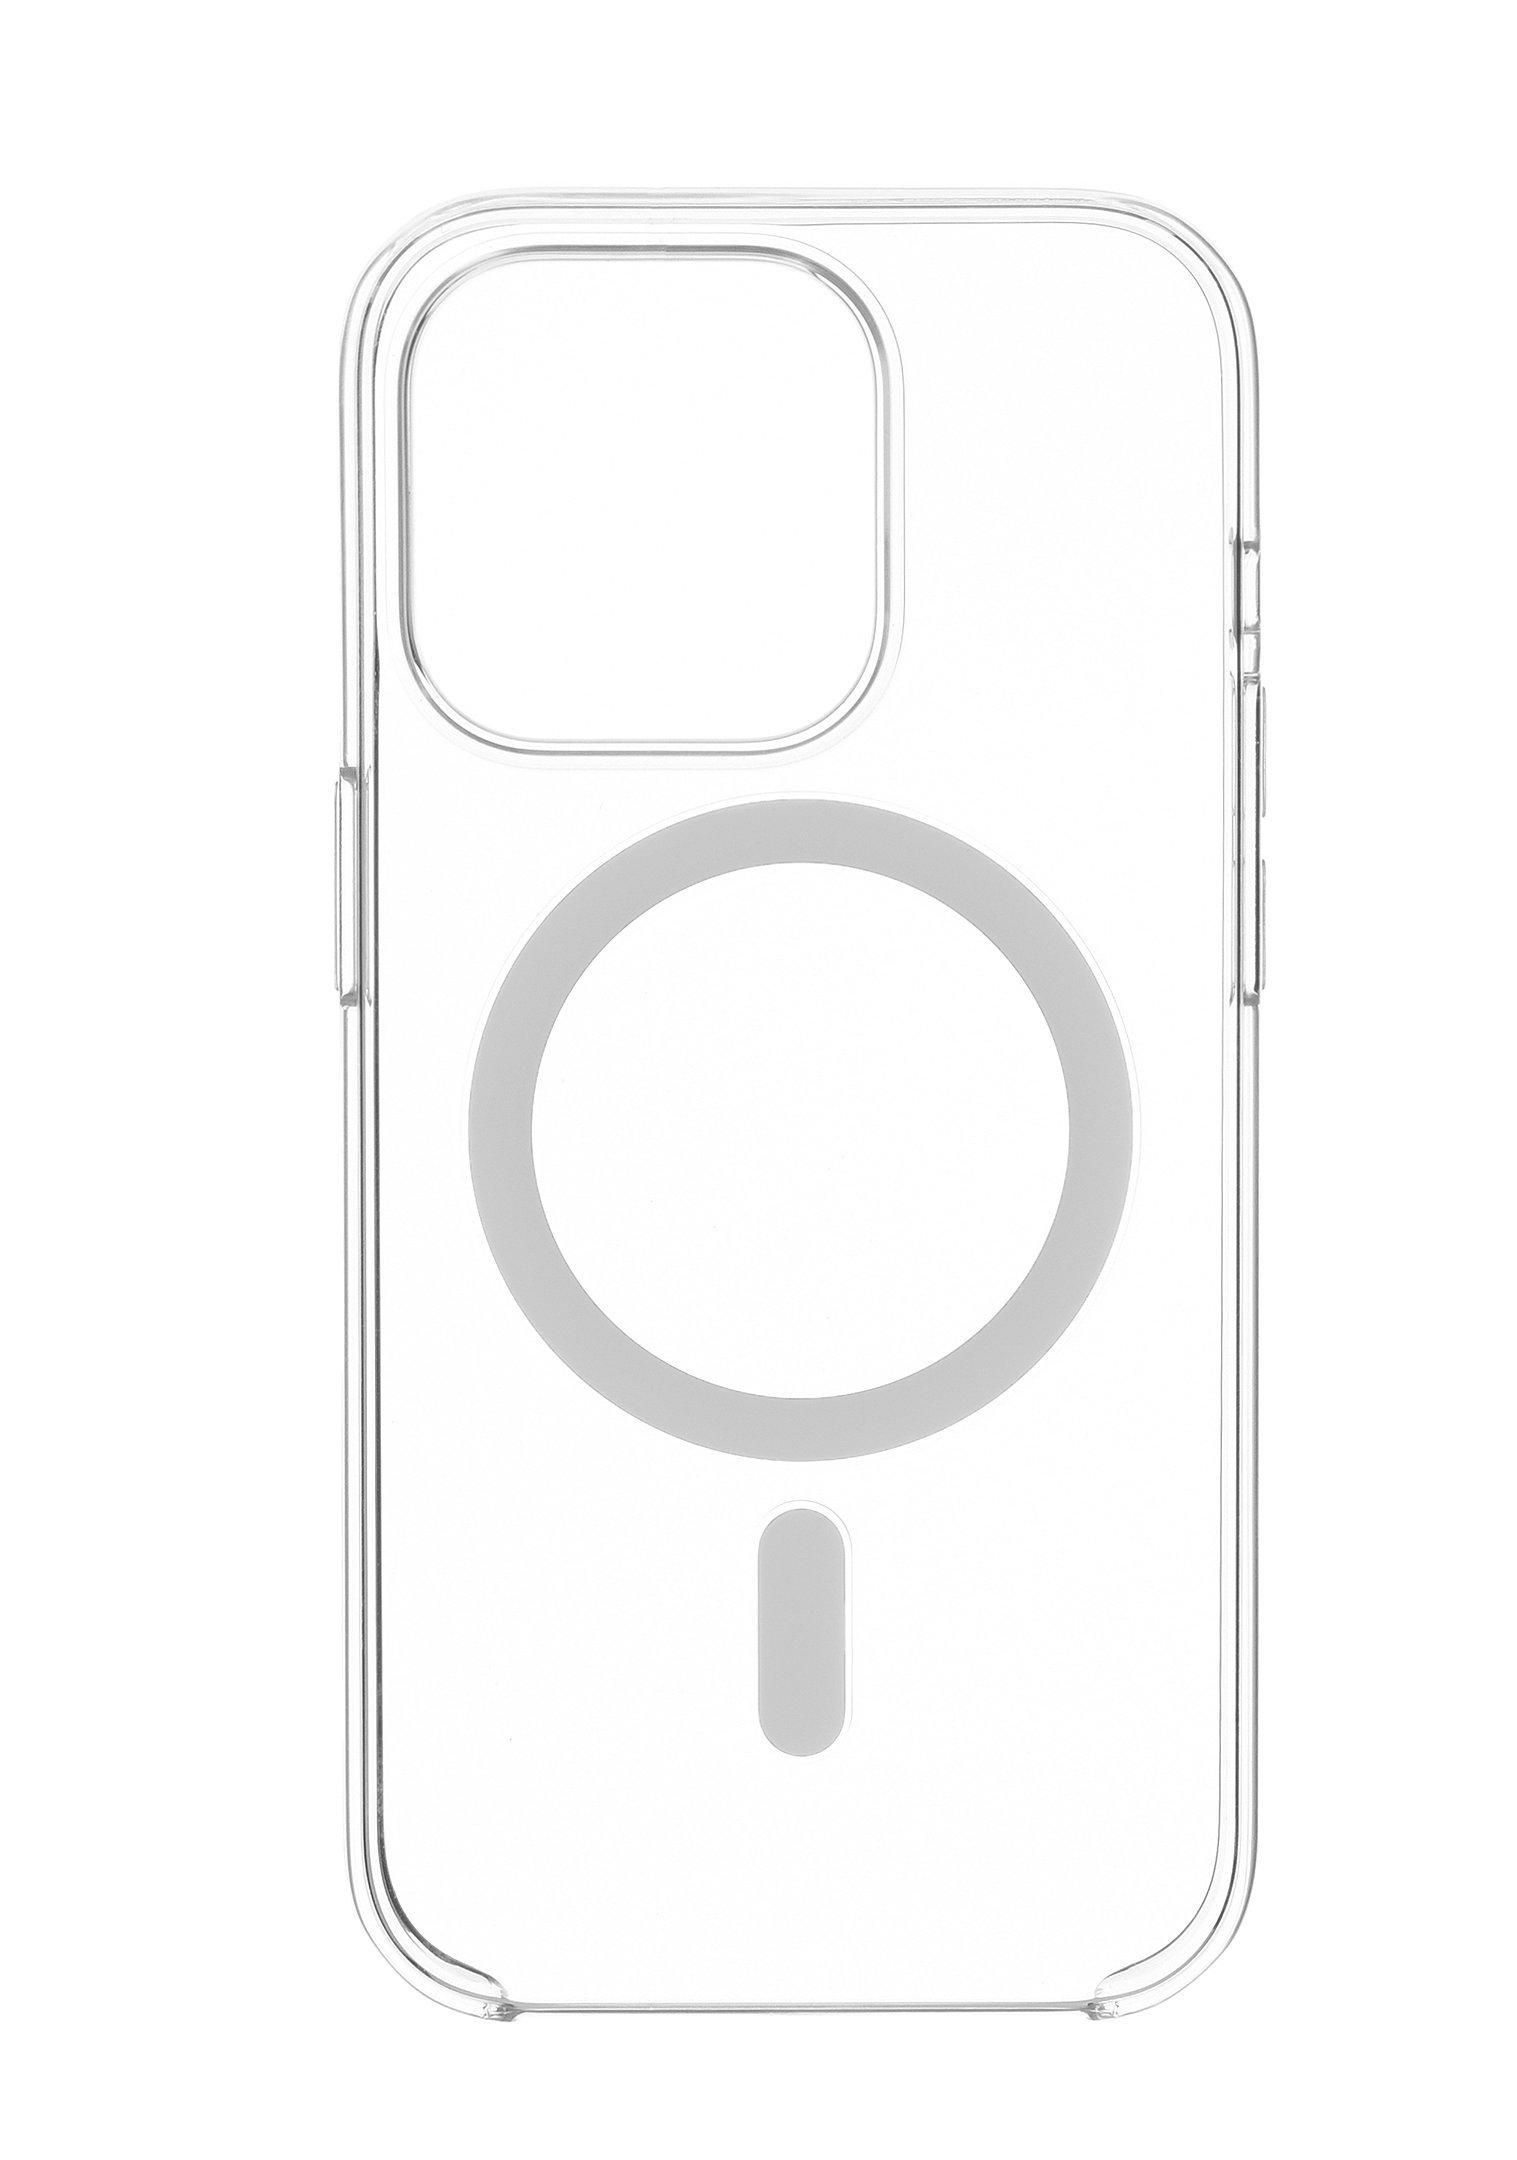 Apple iPhone 15 Pro Max, 512 GB White Titanium price in Saudi